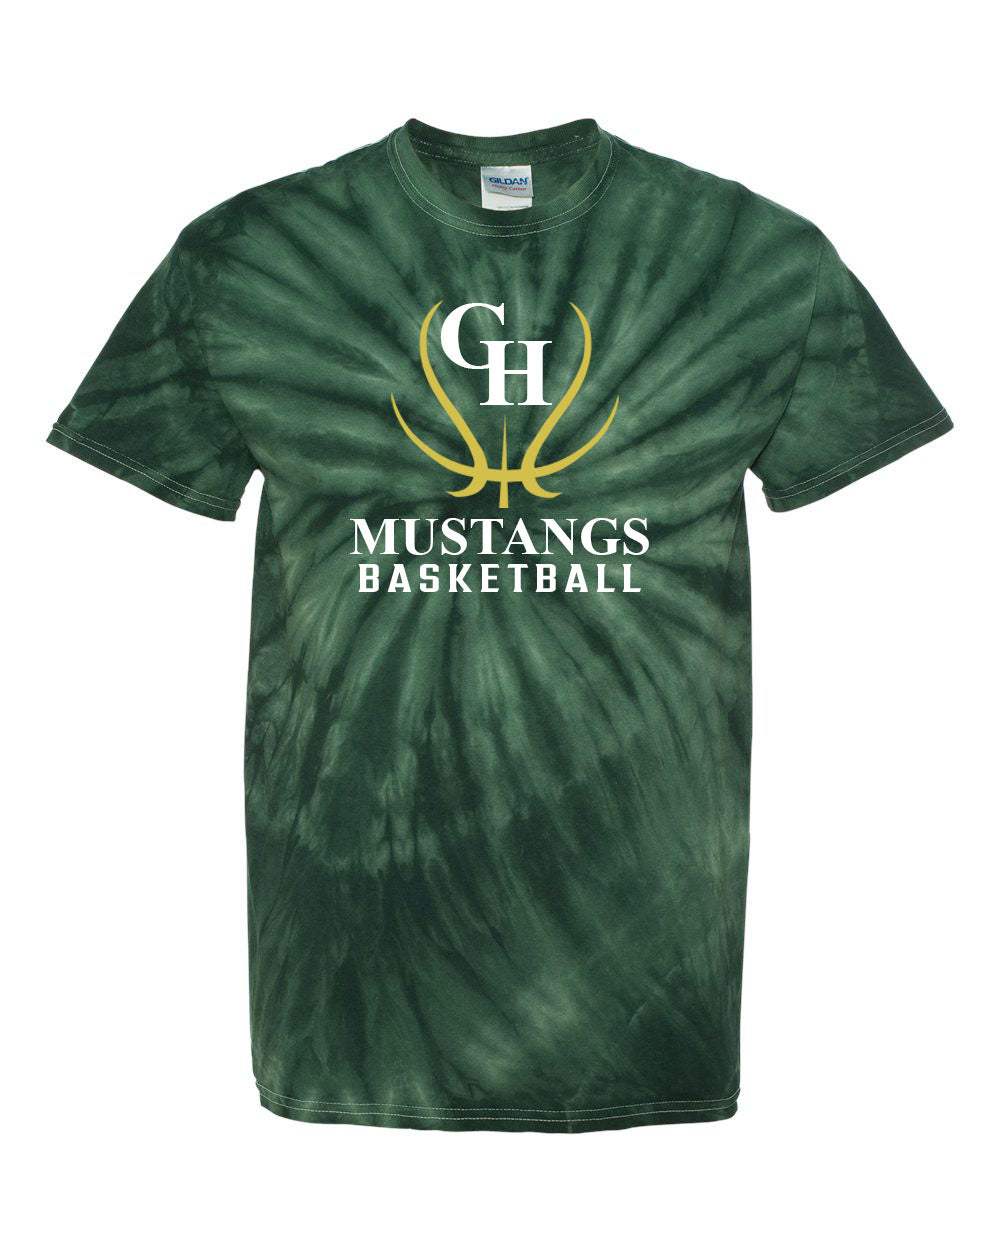 Green Hills Basketball Tie Dye t-shirt Design 7